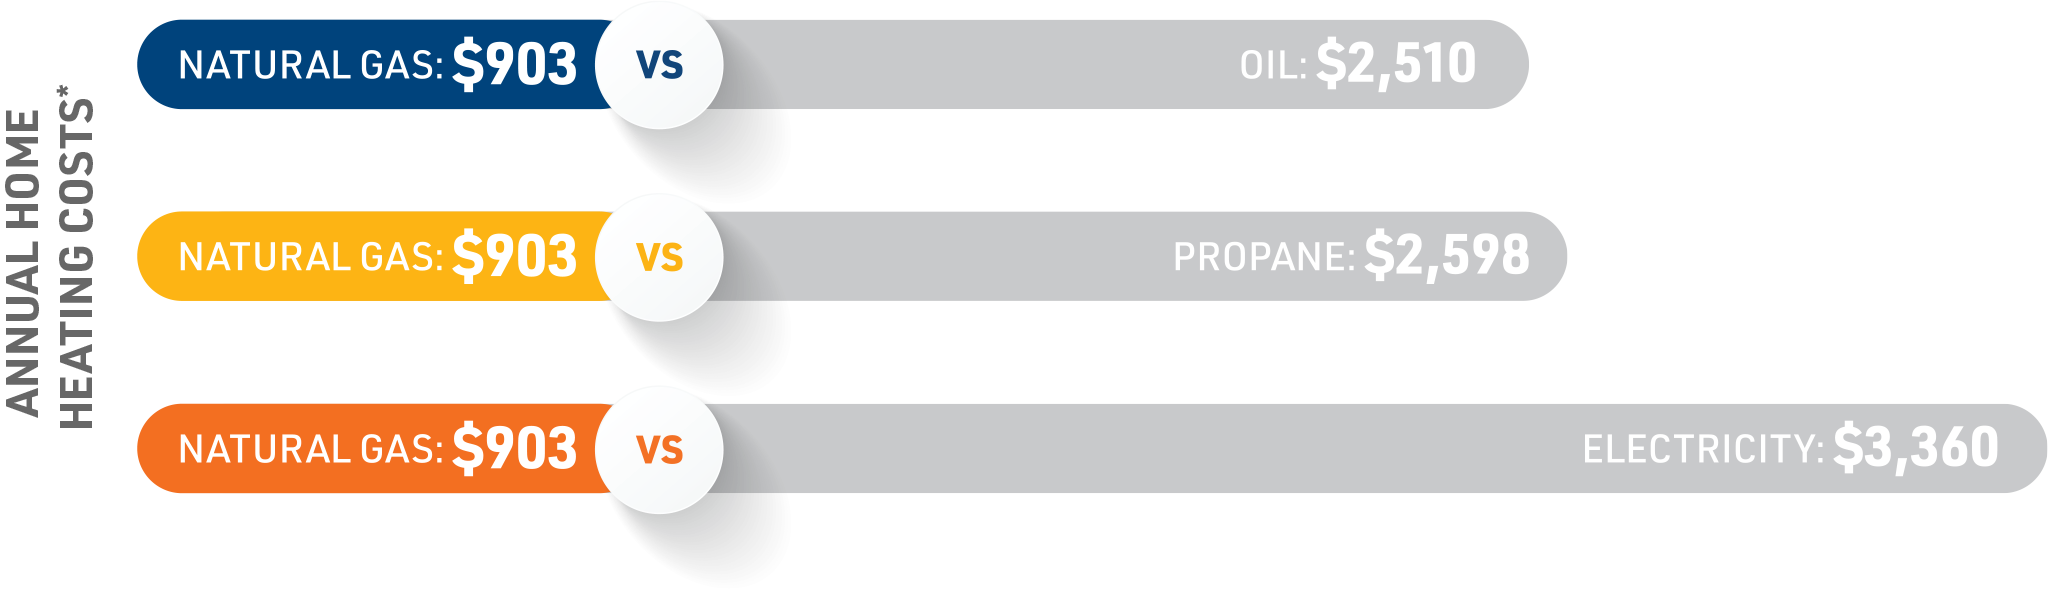 Compare to Oil